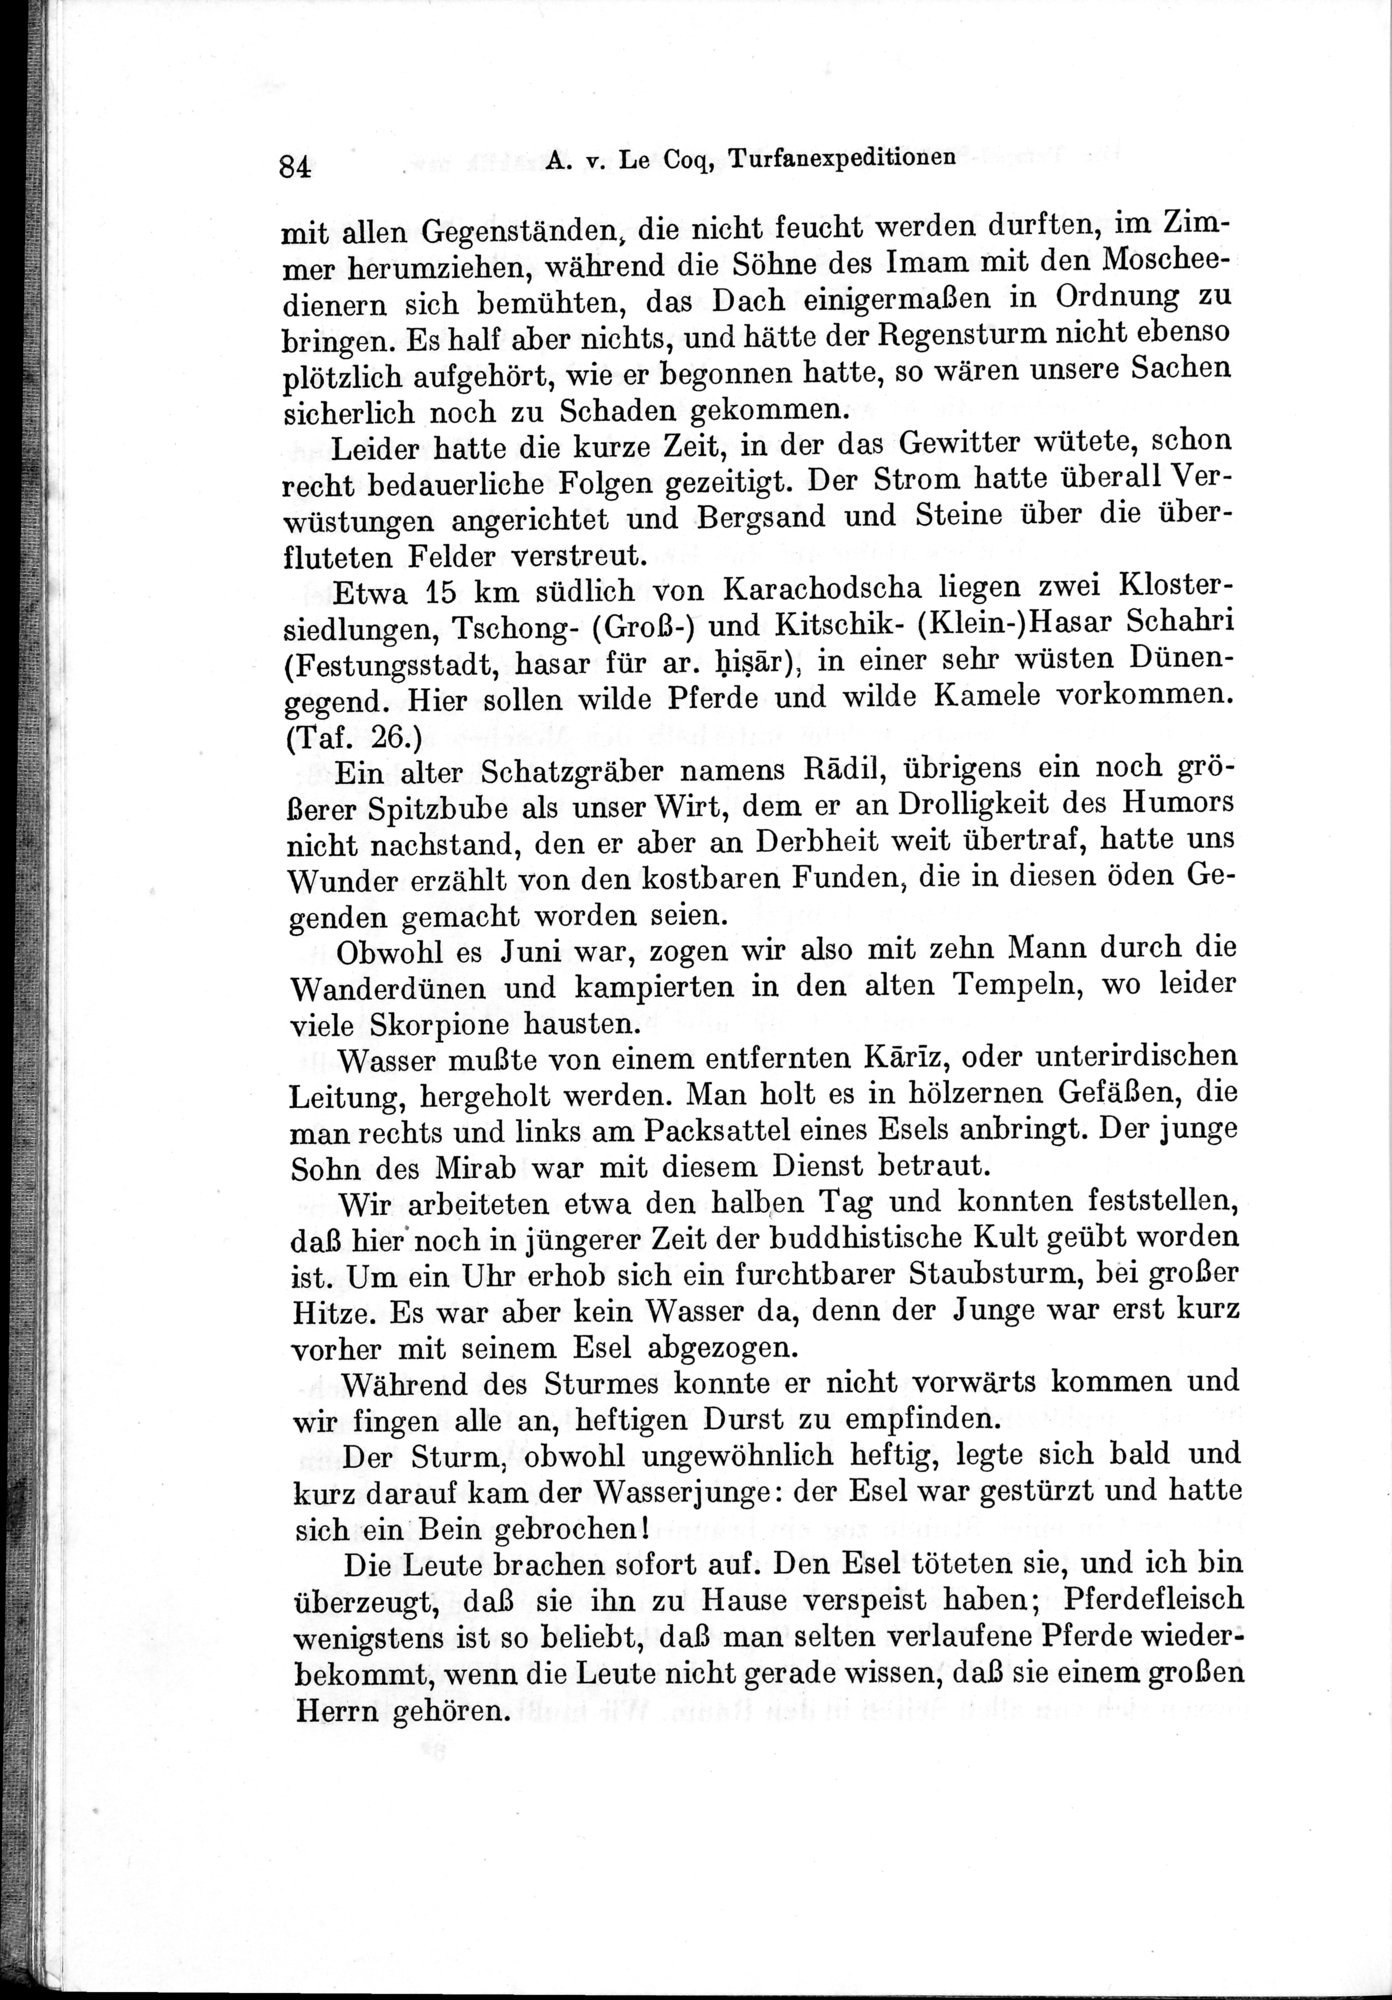 Auf Hellas Spuren in Ostturkistan : vol.1 / Page 124 (Grayscale High Resolution Image)